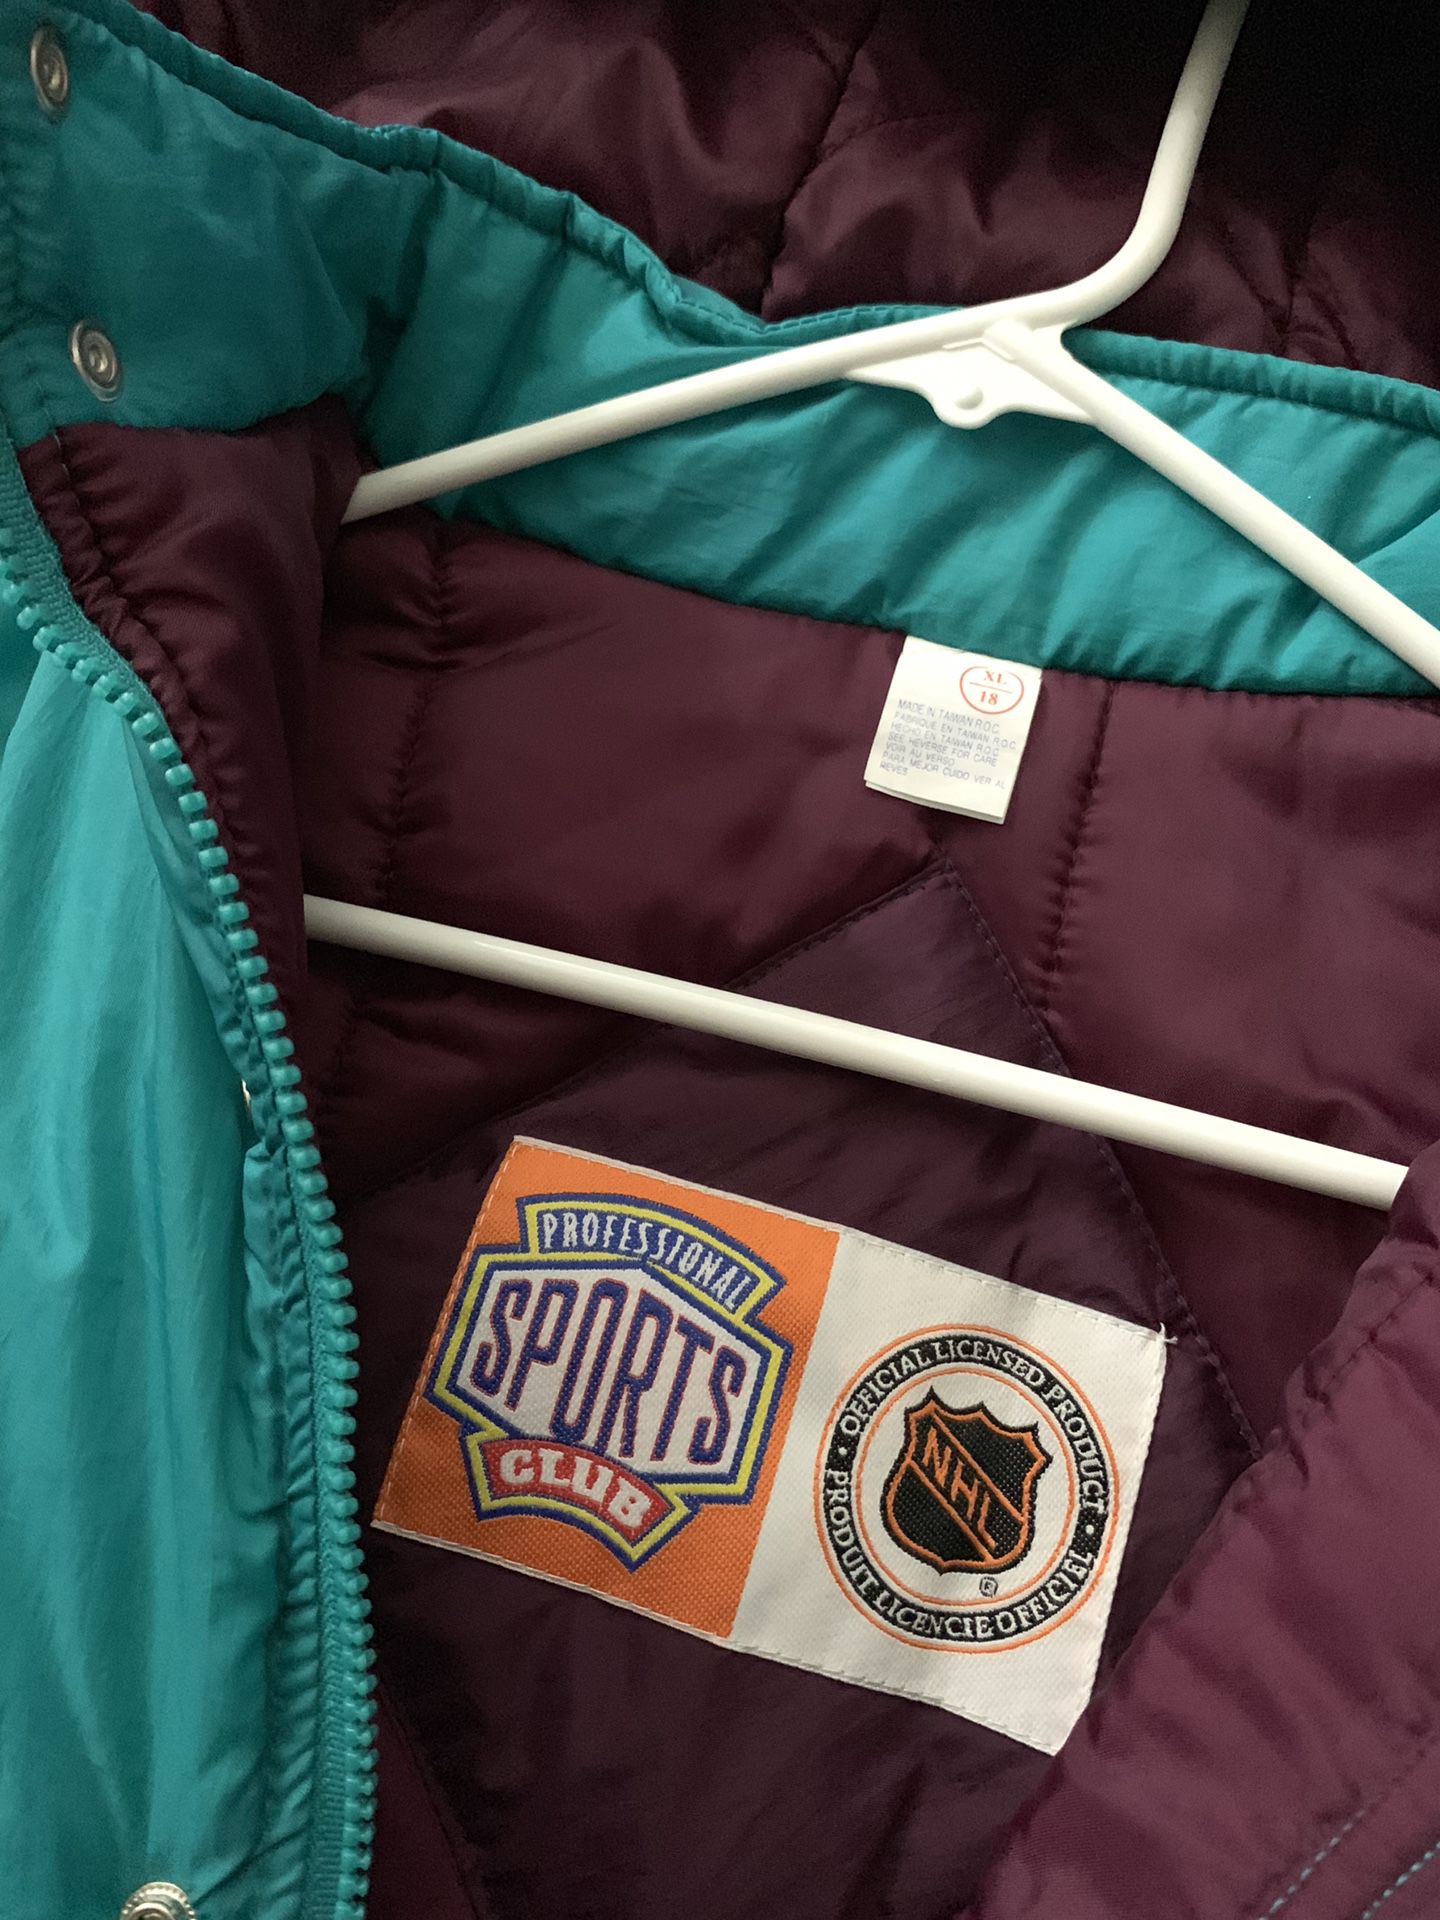 Vintage 90's Starter NHL Anaheim MIGHTY DUCKS Jacket XL Old School